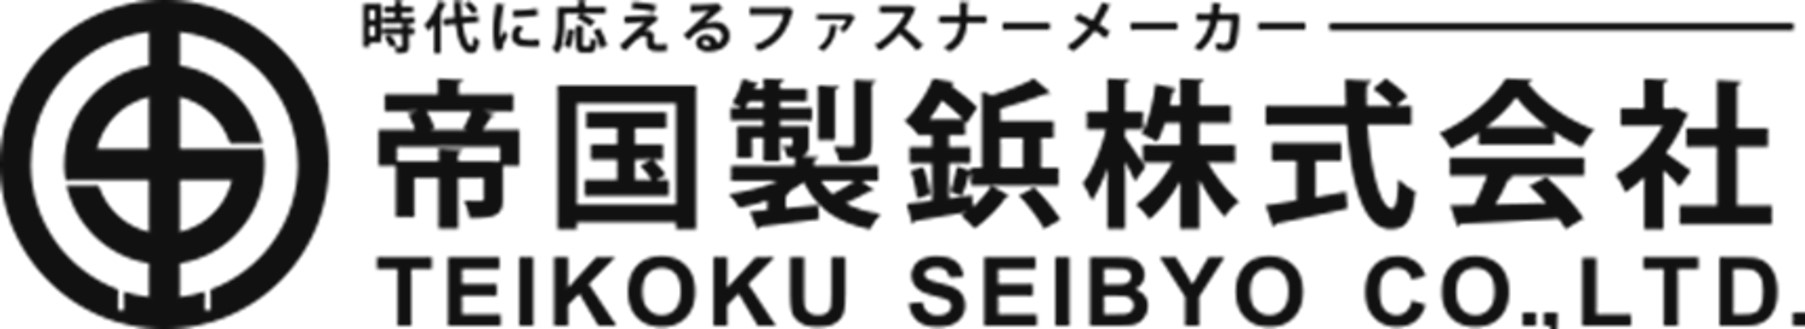 TEIKOKU SEIBYO CO., LTD.